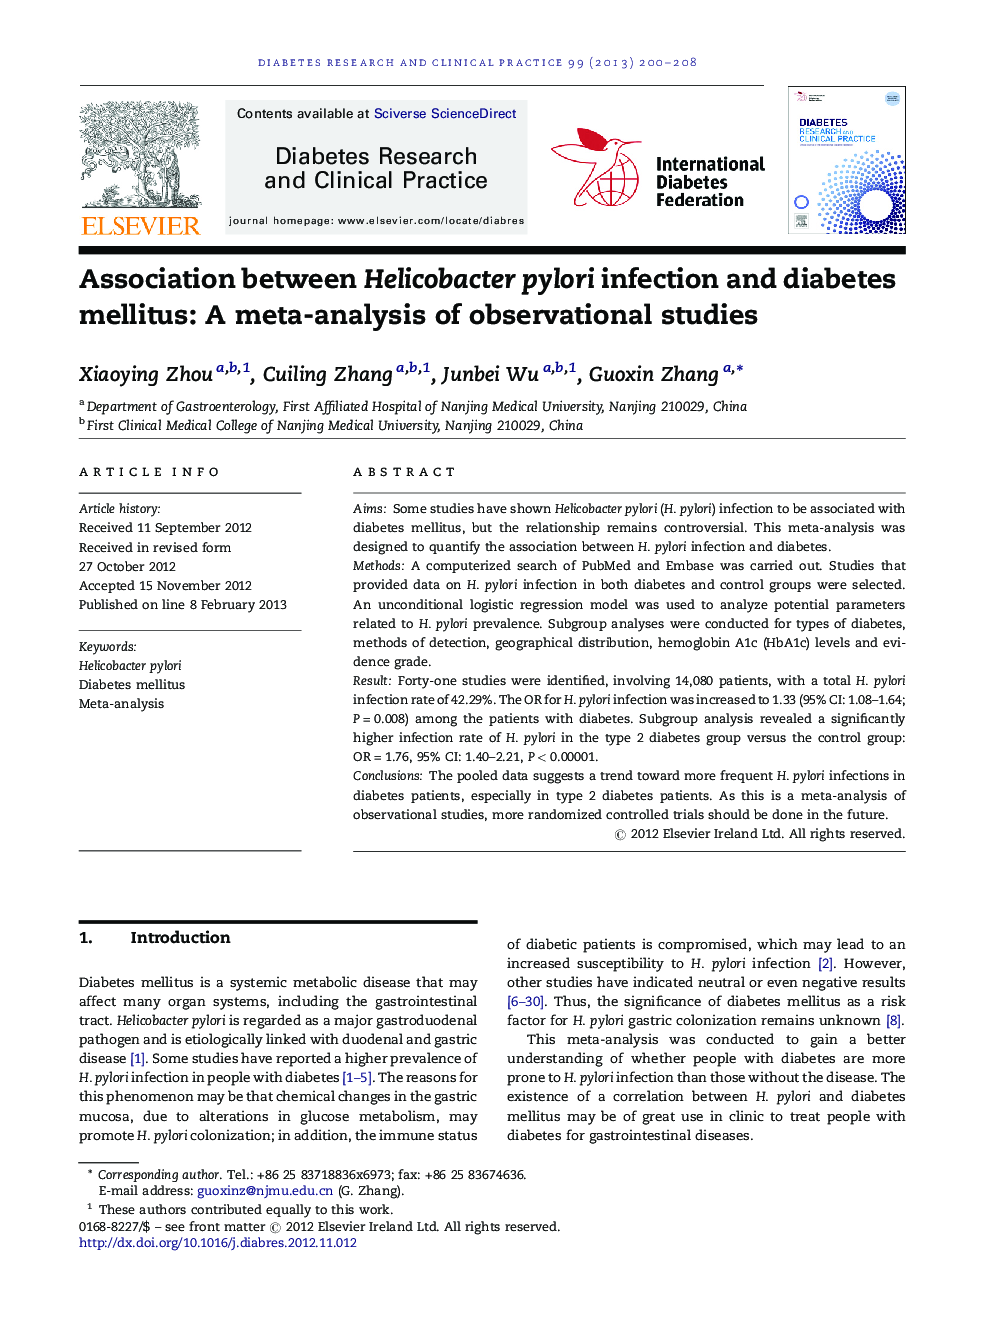 ارتباط بین عفونت هلیکوباکتر پیلوری و دیابت: یک متاآنالیز مطالعات مشاهده شده 